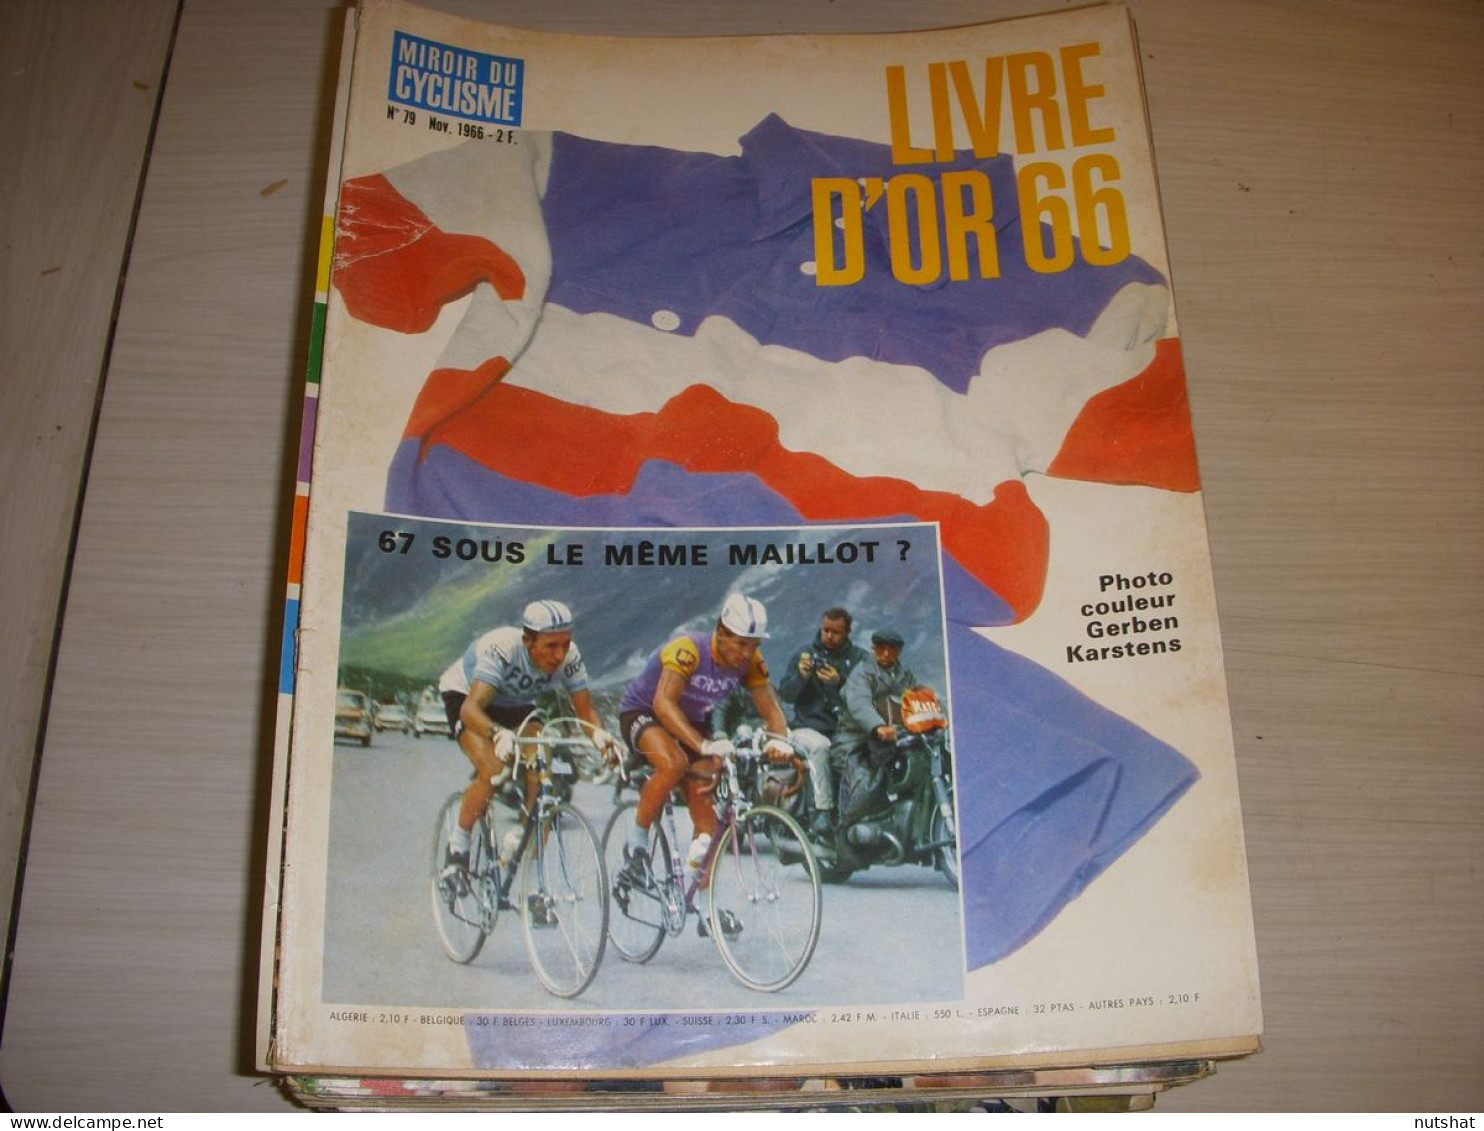 MIROIR Du CYCLISME 079 11.1966 LIVRE D’OR 66 ANQUETIL MERCKX TOUS Les RESULTATS - Sport